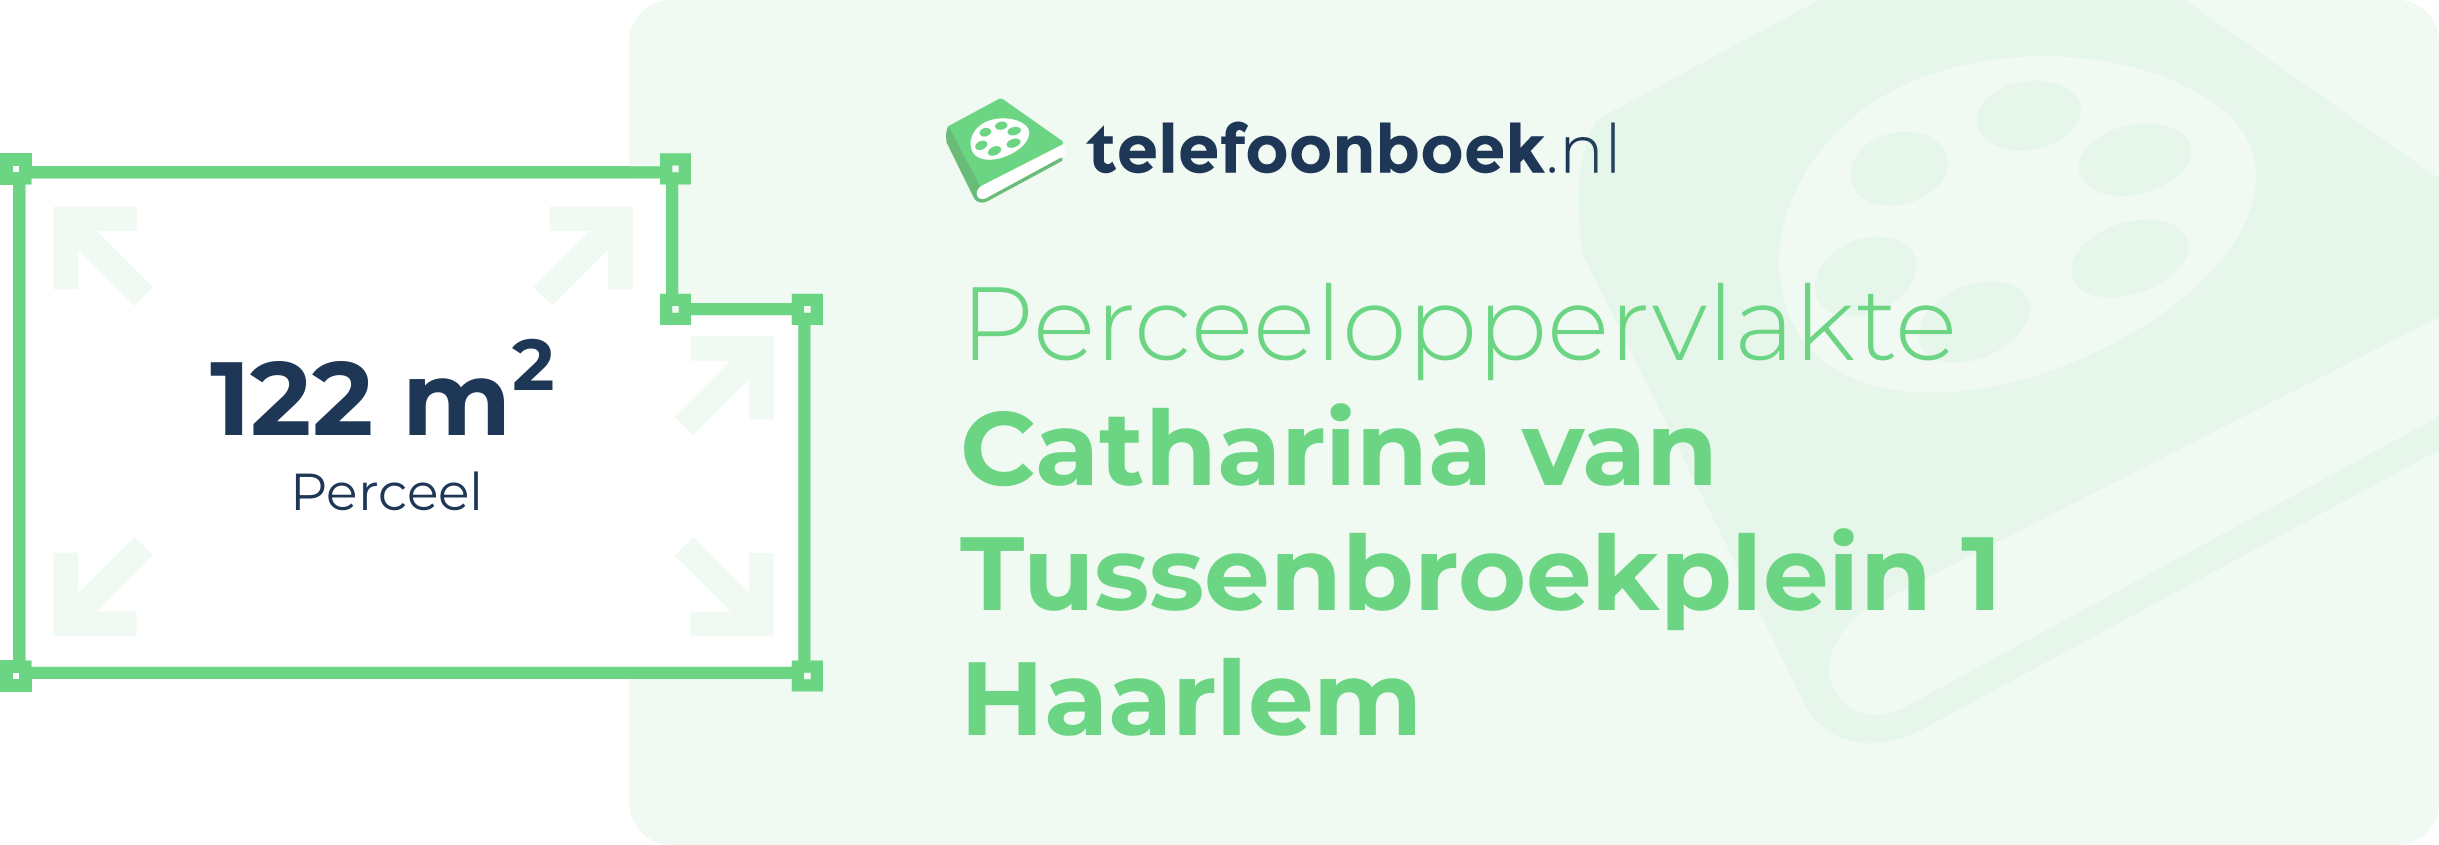 Perceeloppervlakte Catharina Van Tussenbroekplein 1 Haarlem